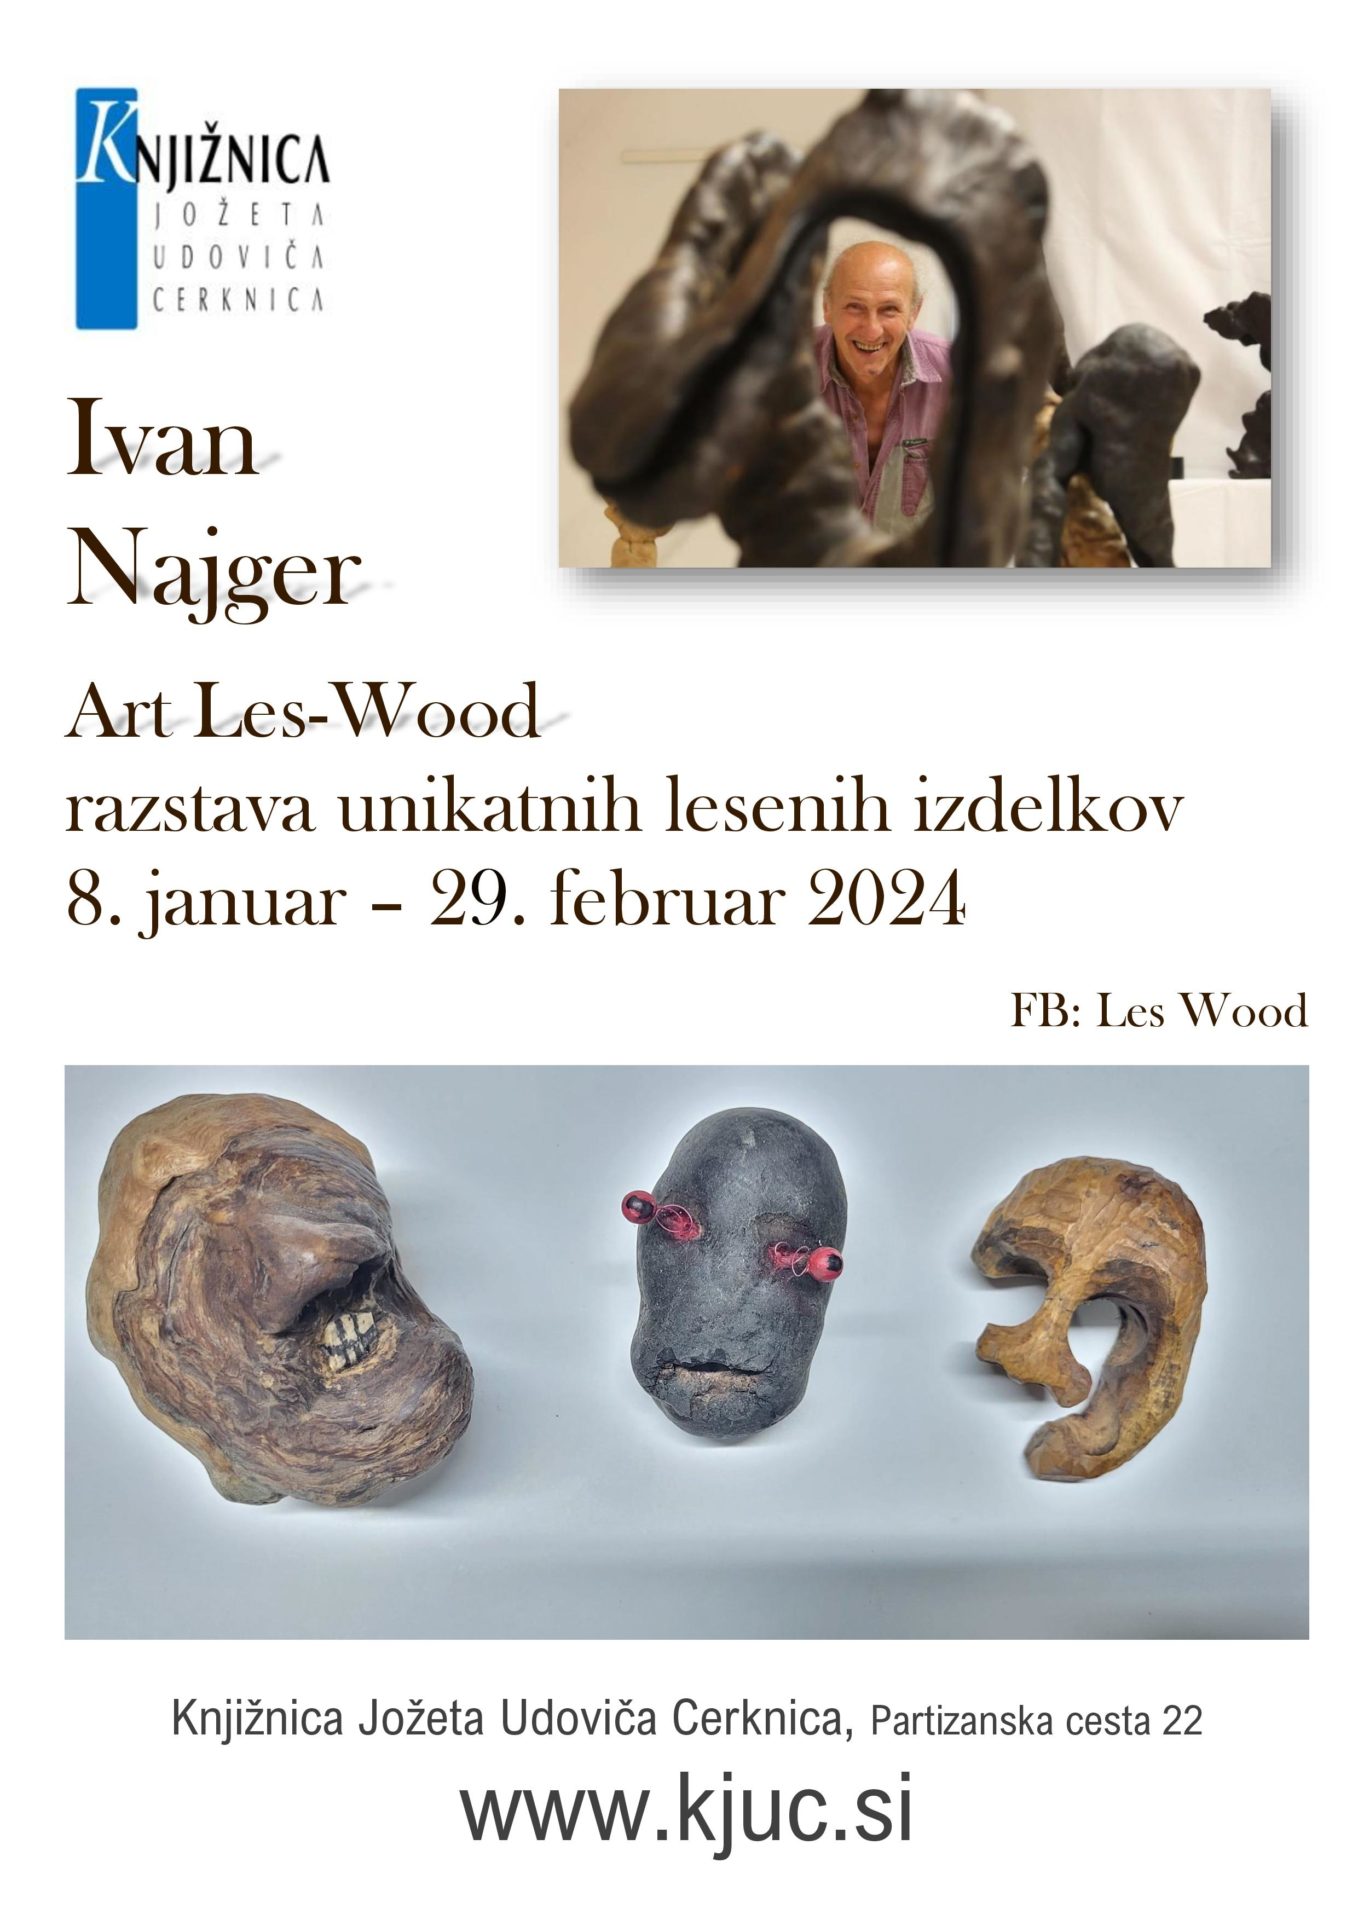 Ivan Najger – kopija page 001 - Ivan Najger – Art Les-Wood - razstava unikatnih lesenih izdelkov